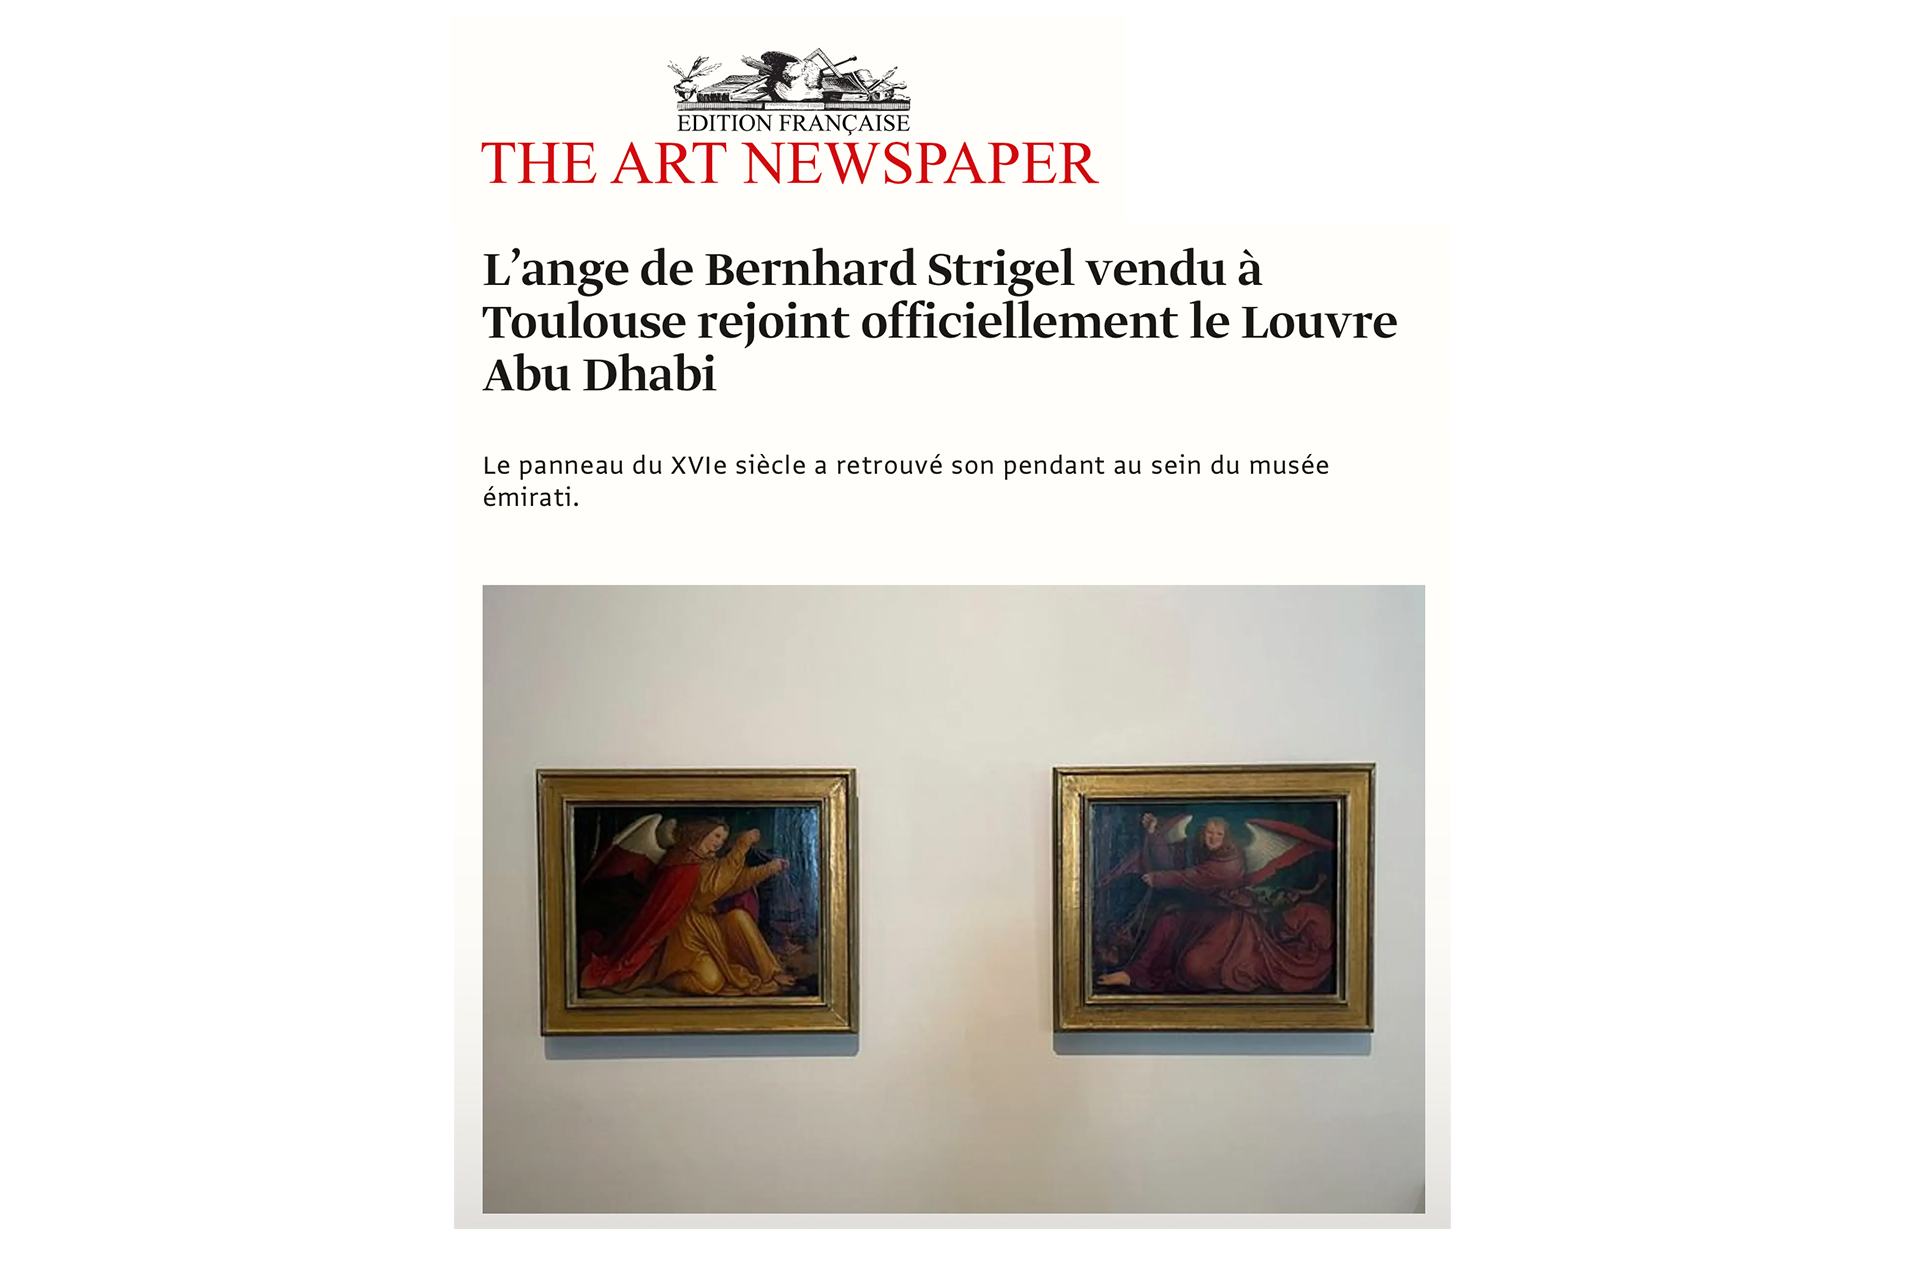 THE ART NEWSPAPER - ARTPAUGÉE